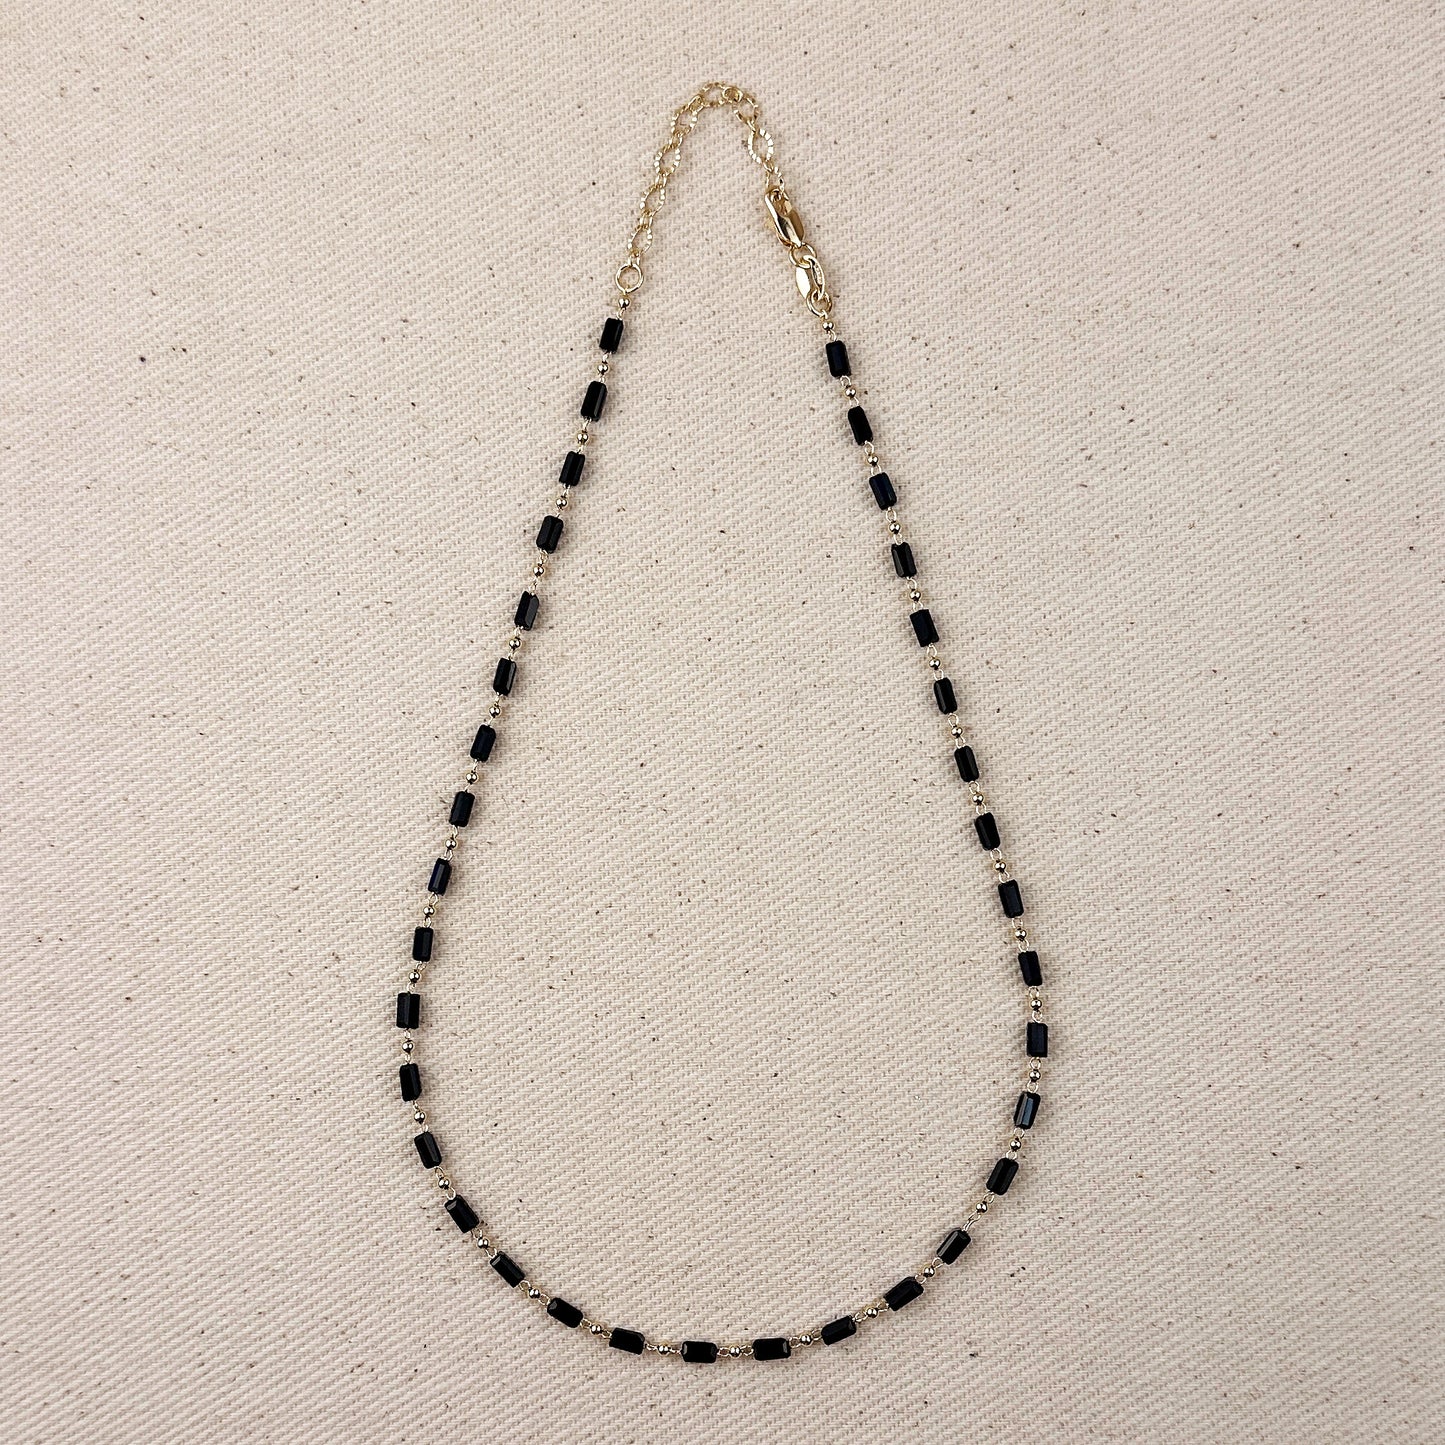 18k Gold Filled 2 mm Black Baguette & Beads Necklace